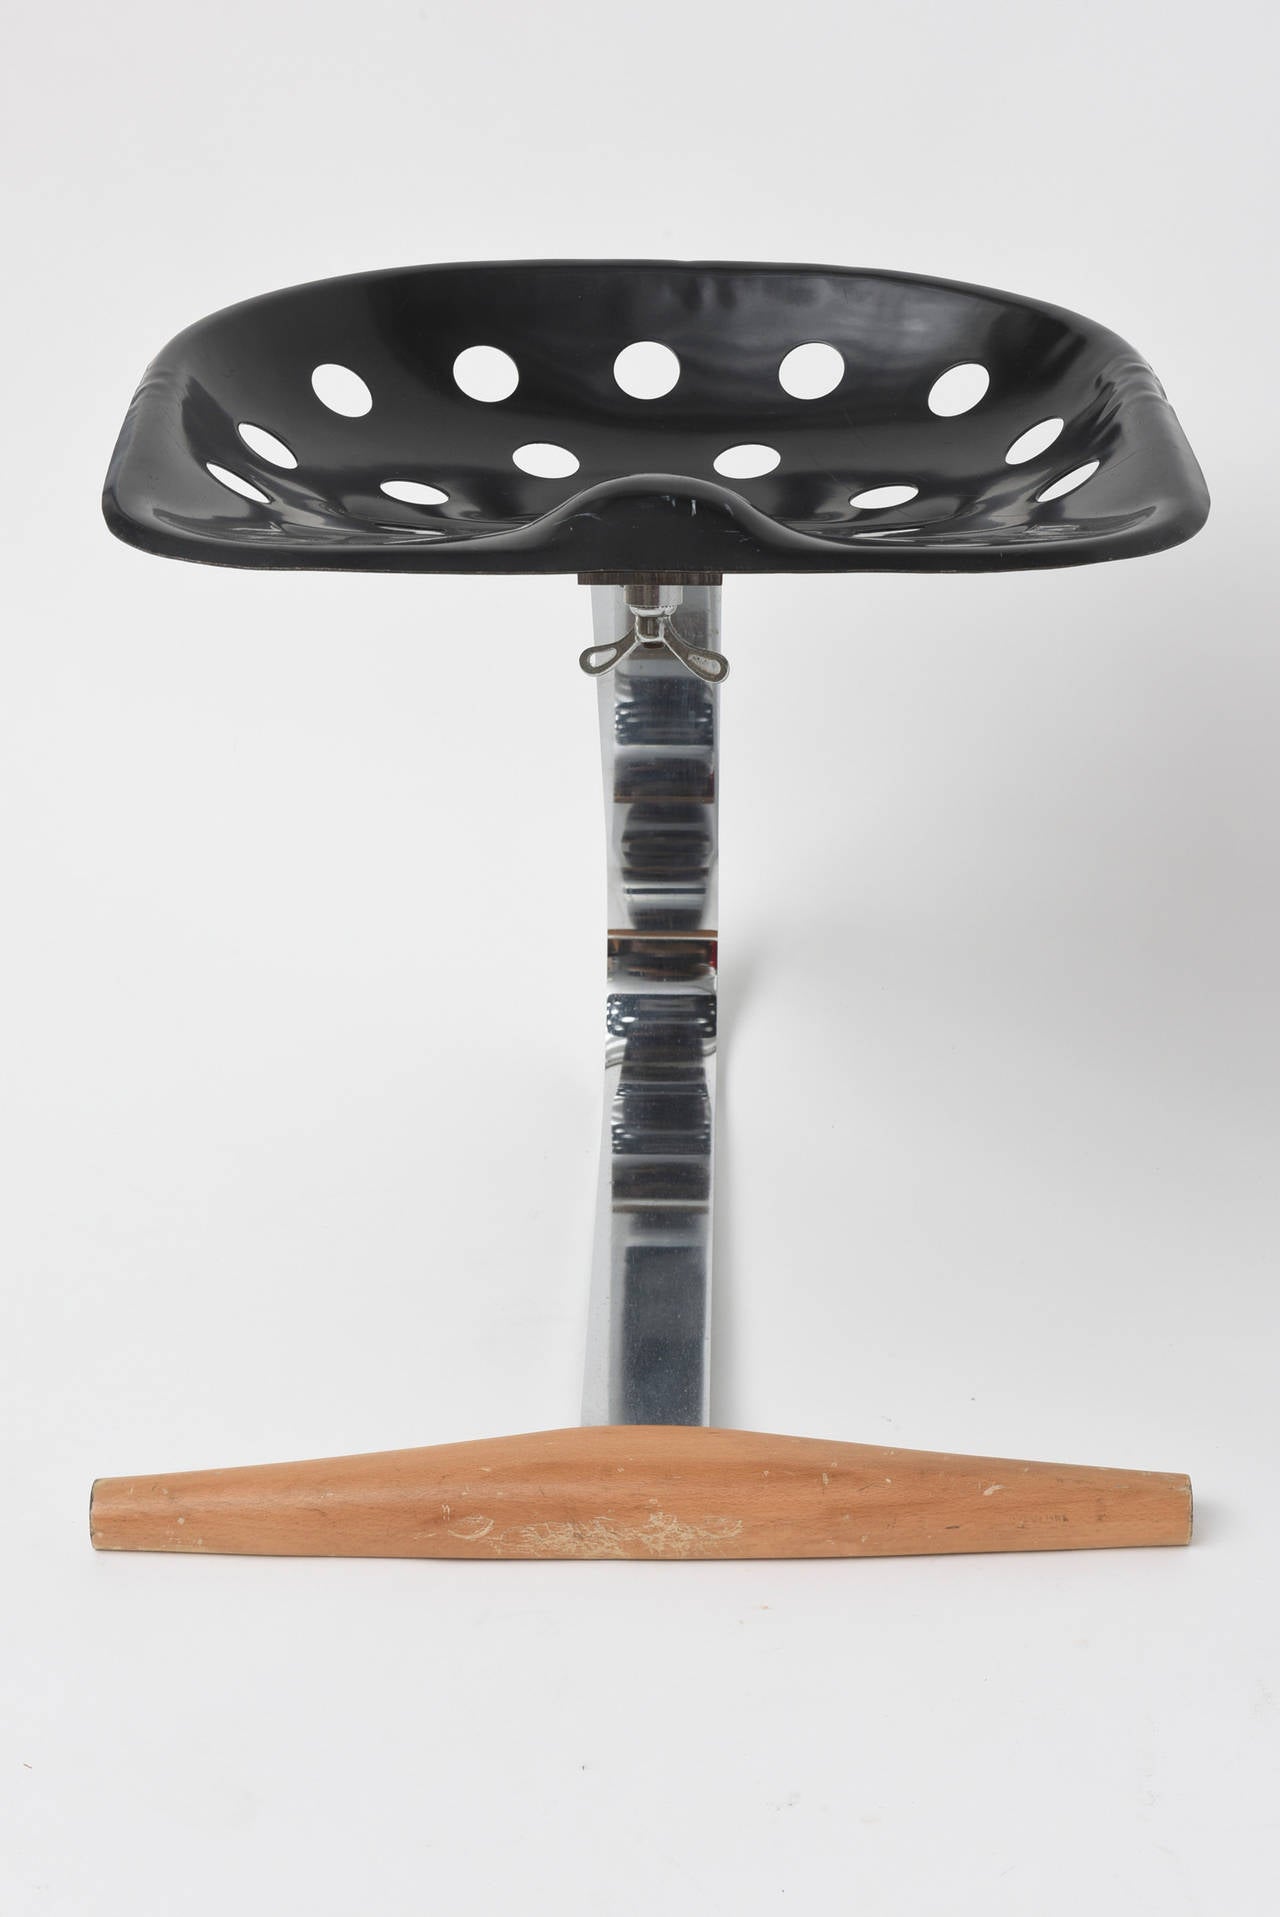 Le premier modèle du tabouret a été présenté à la Triennale de Milan en 1954.
Elle a été présentée sous la bannière 